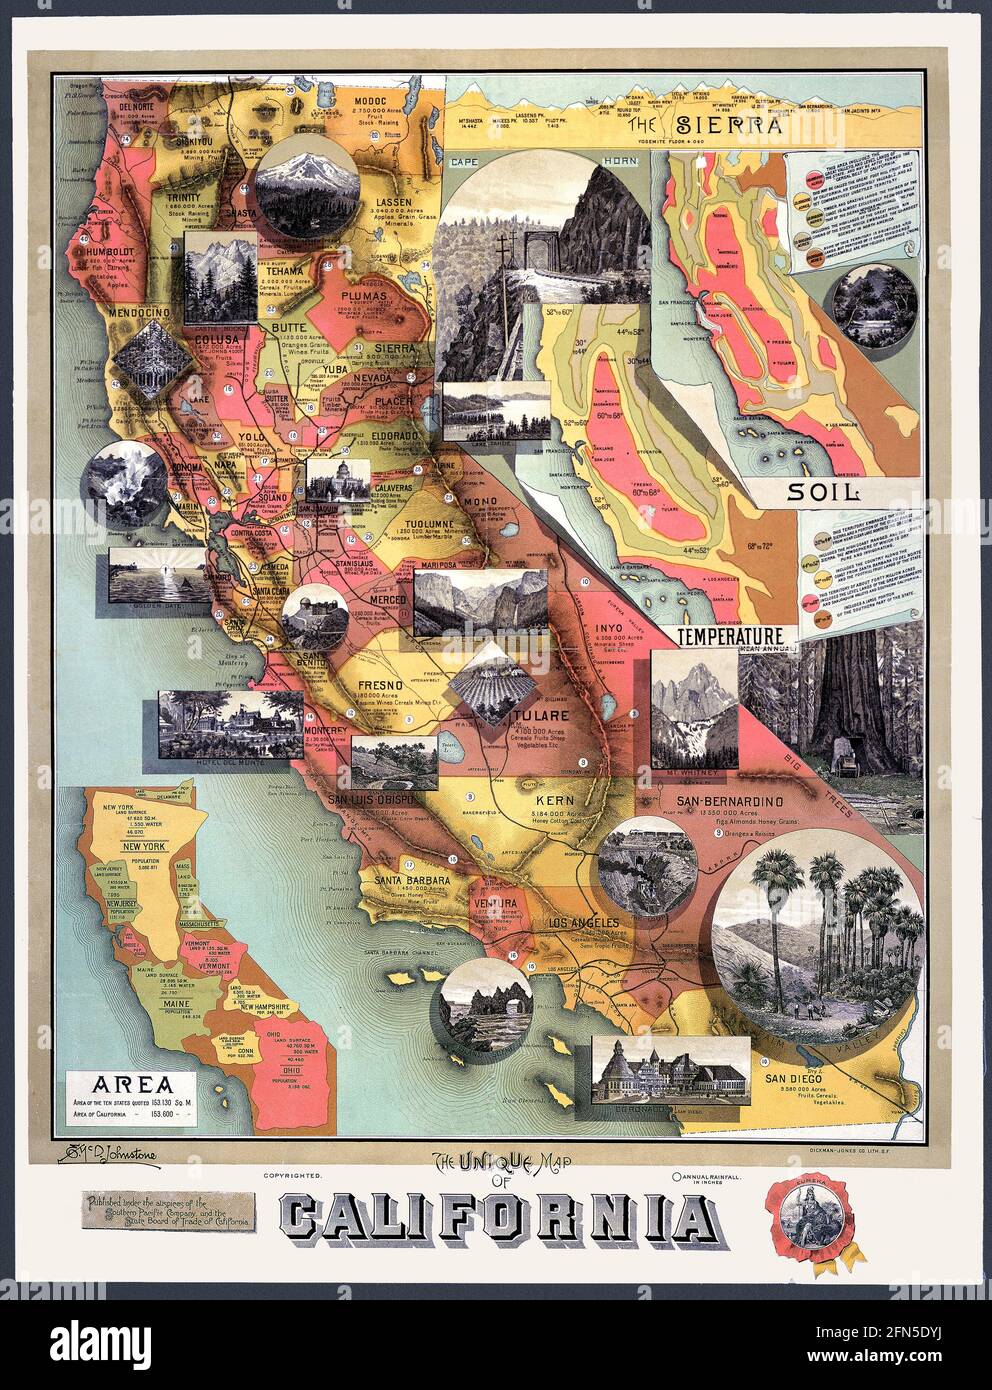 La vecchia mappa della California pubblicata nel 1890, sponsorizzata da una ferrovia, dà fatti interessanti. Inserisci mappe fornisce informazioni, tra cui una che mostra le dimensioni relative della California rispetto ad altri stati. Un'altra mostra una sezione trasversale delle montagne della Sierra Nevada e l'elevazione di alcune delle vette. Le vignette mostrano immagini classiche della California. Foto Stock